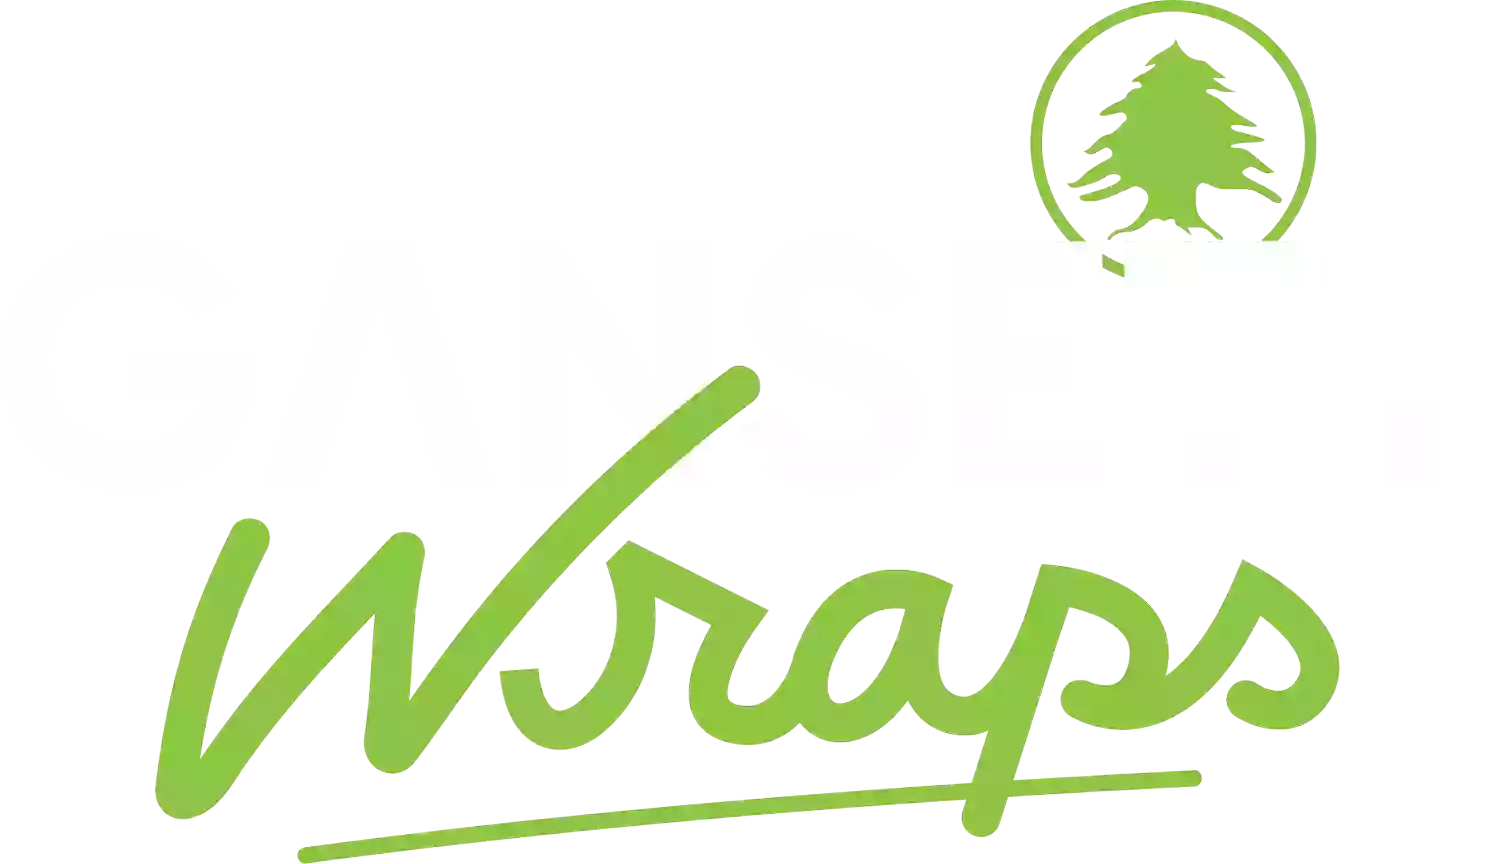 Gansett Wraps